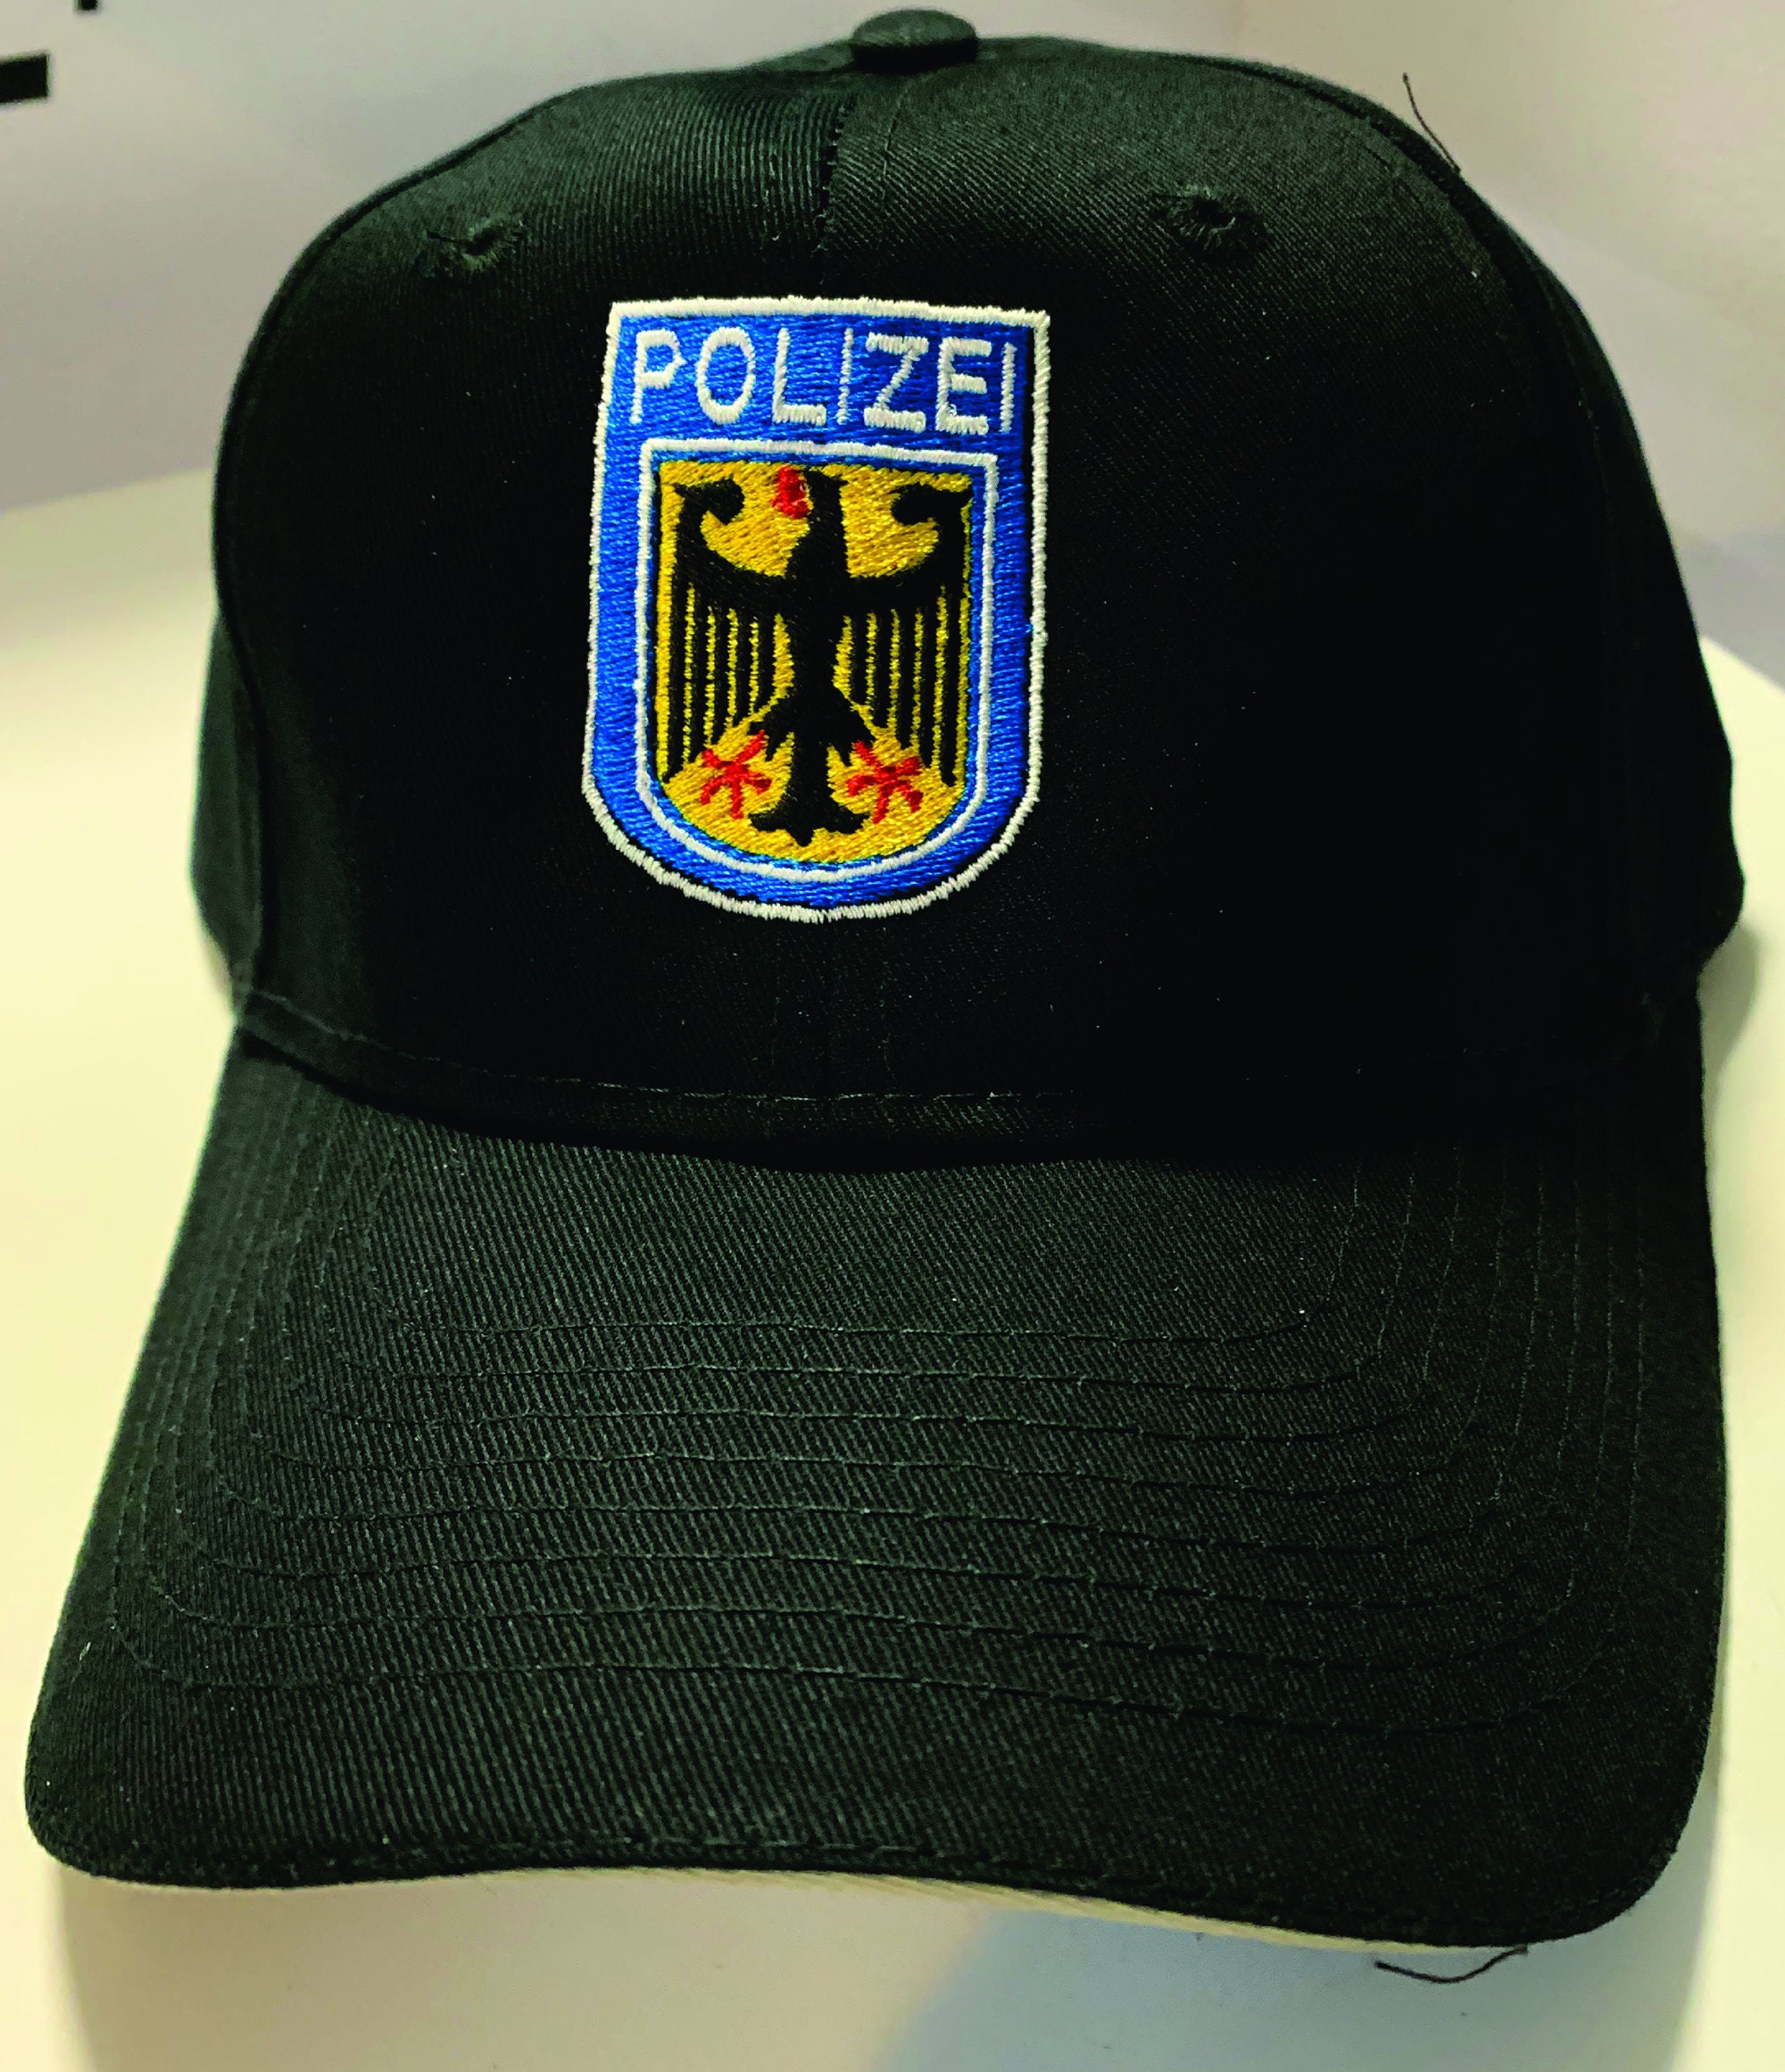 german police, polizei - German Police Polizei - Sticker